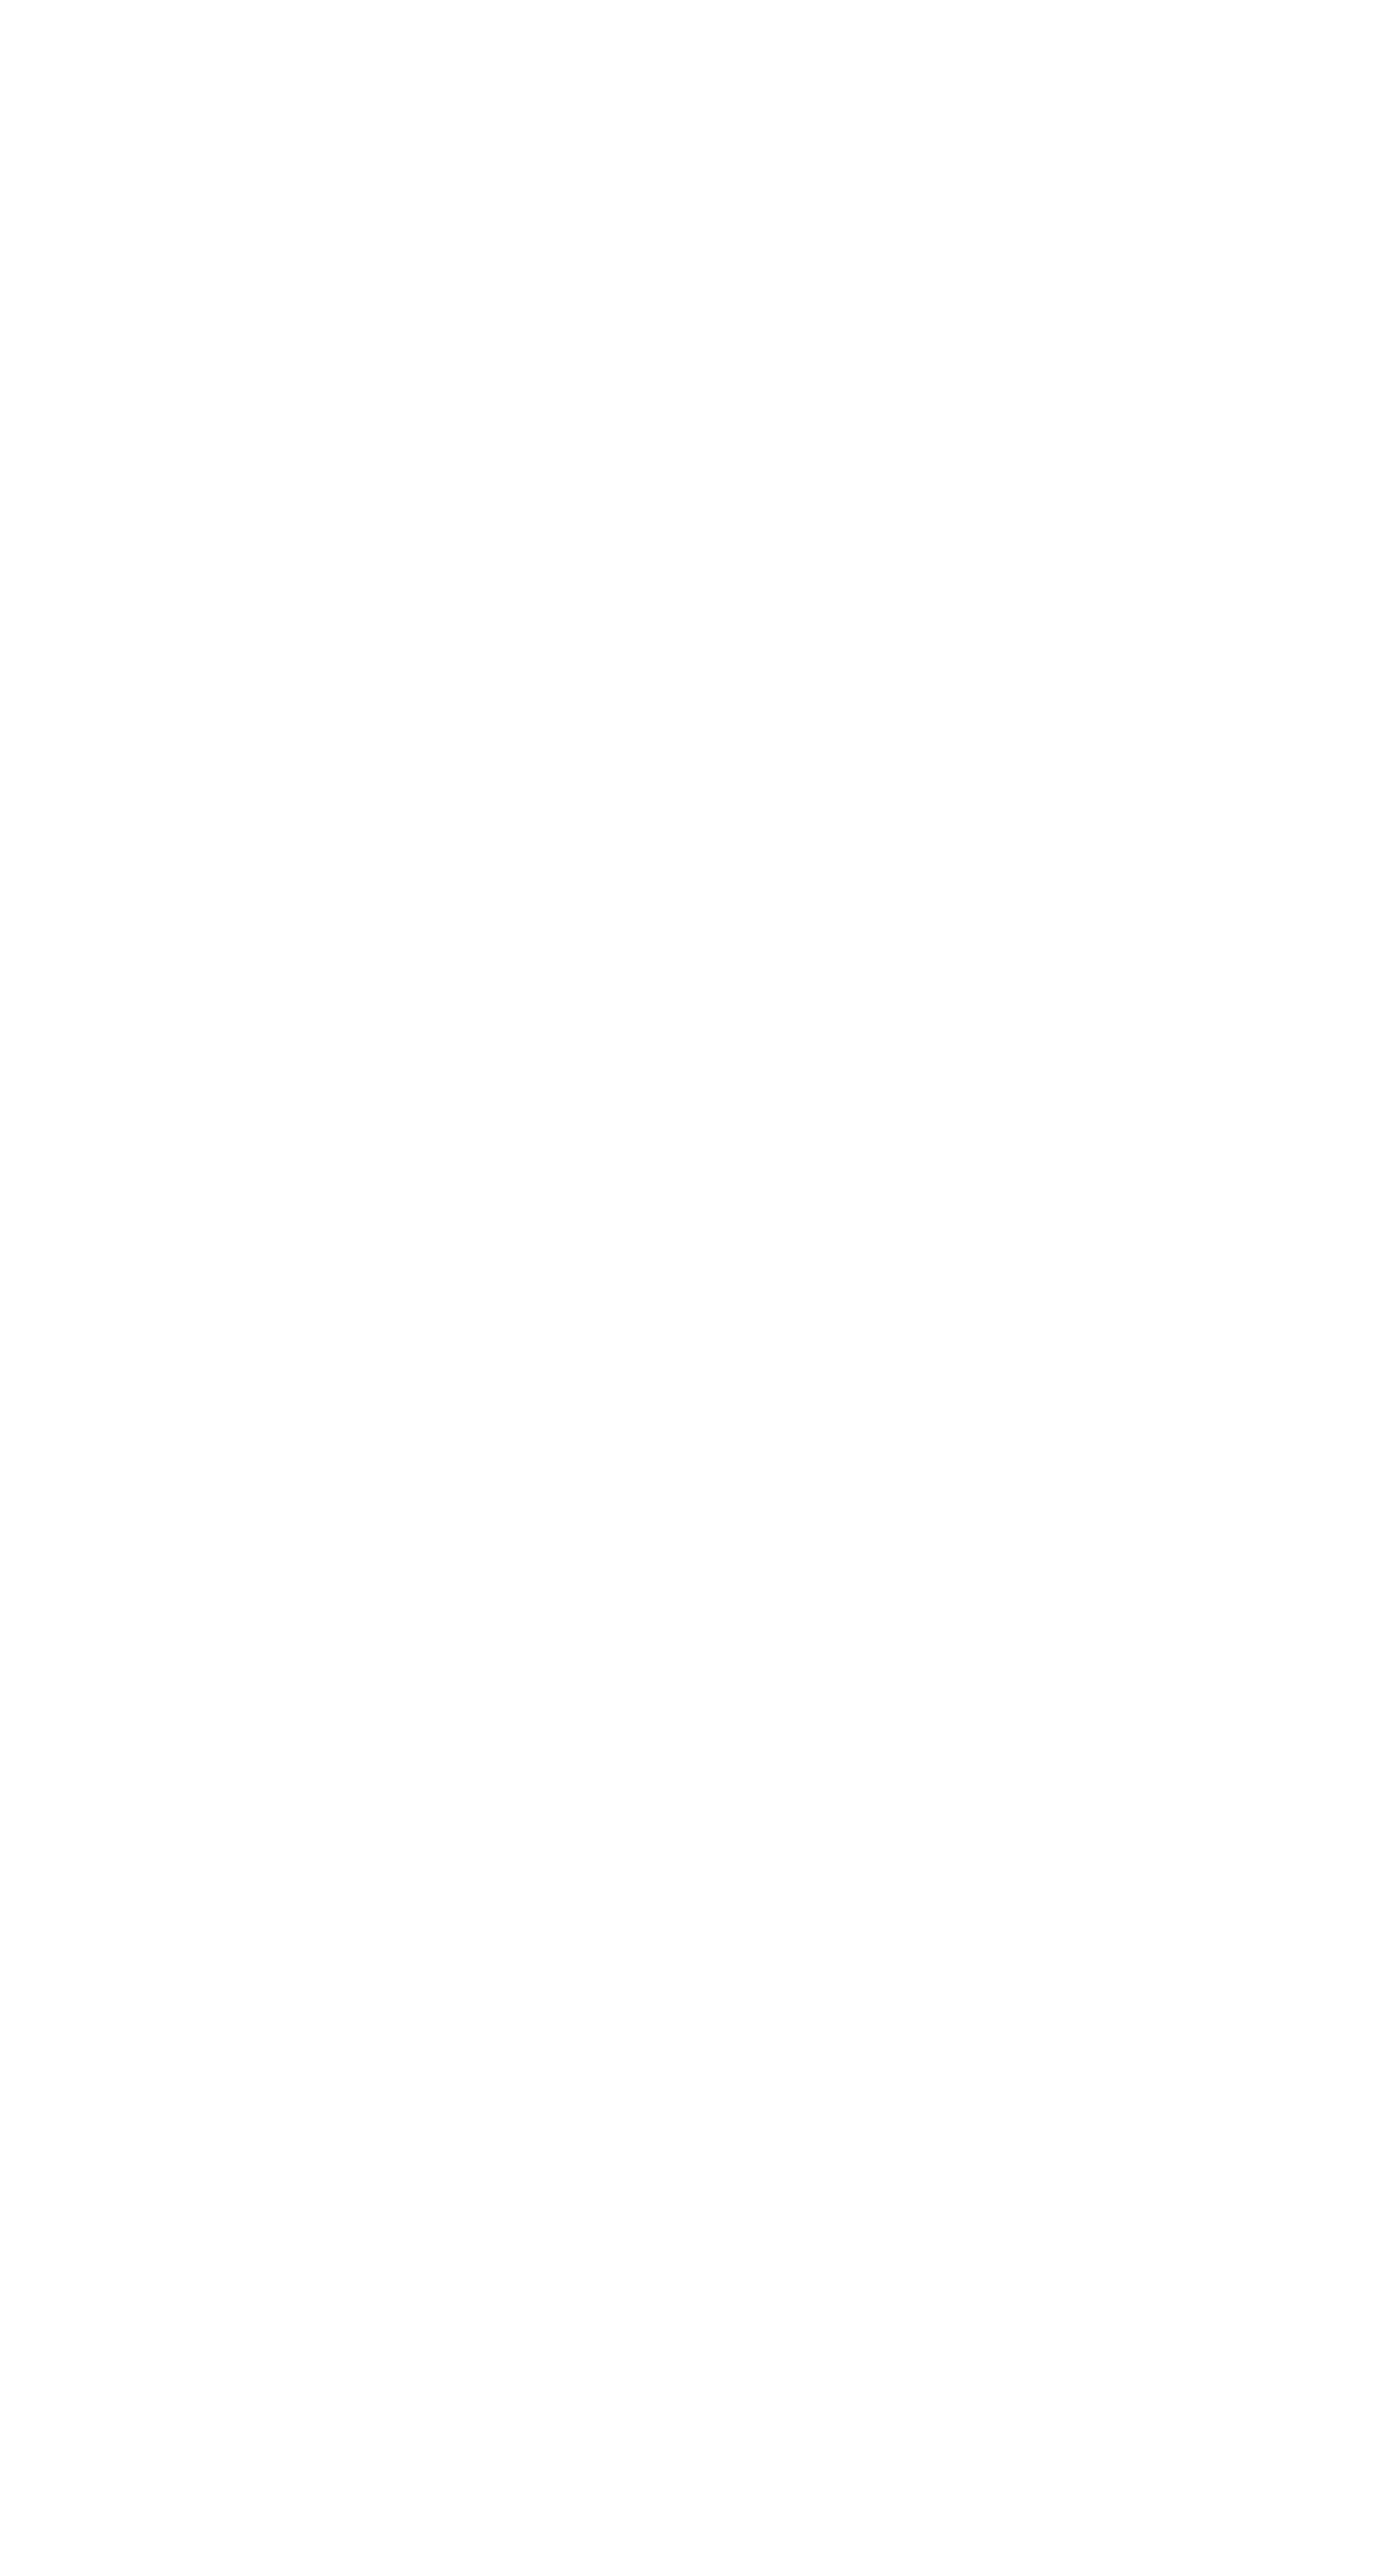 KakaoBank logo pour fonds sombres (PNG transparent)